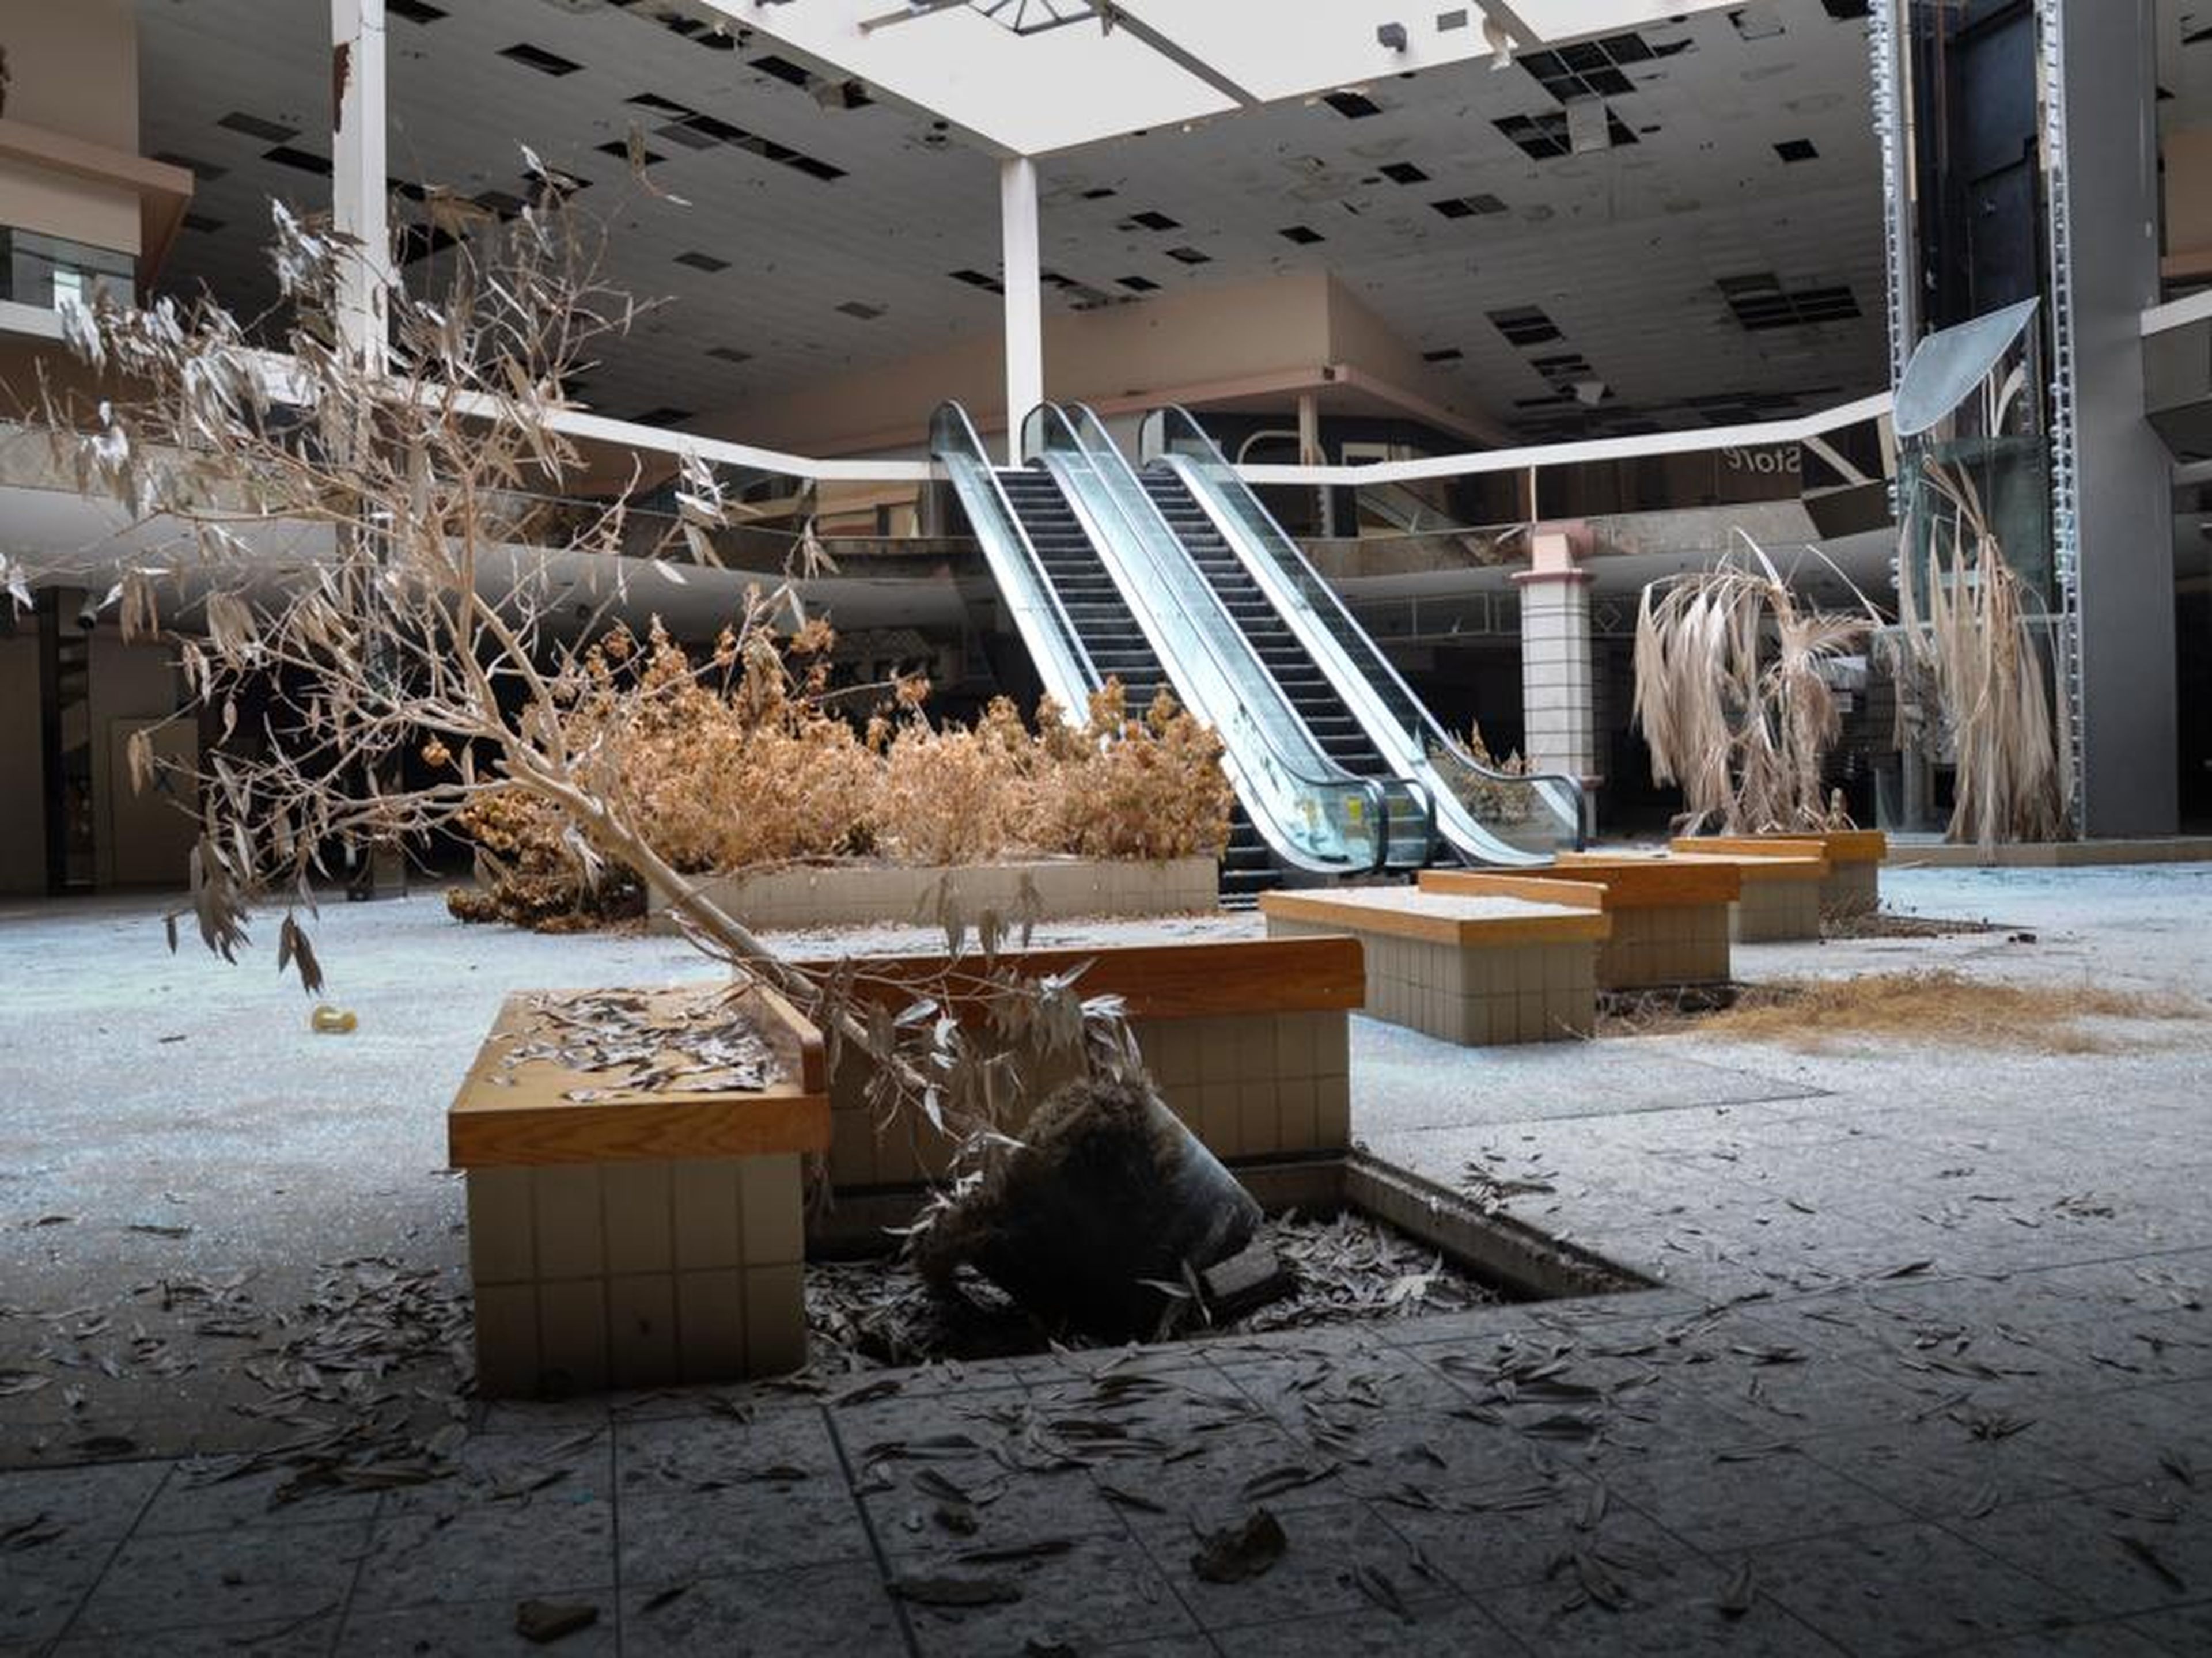 Una instalación de Amazon podría remplazar pronto al centro comercial abandonado de Ohio.